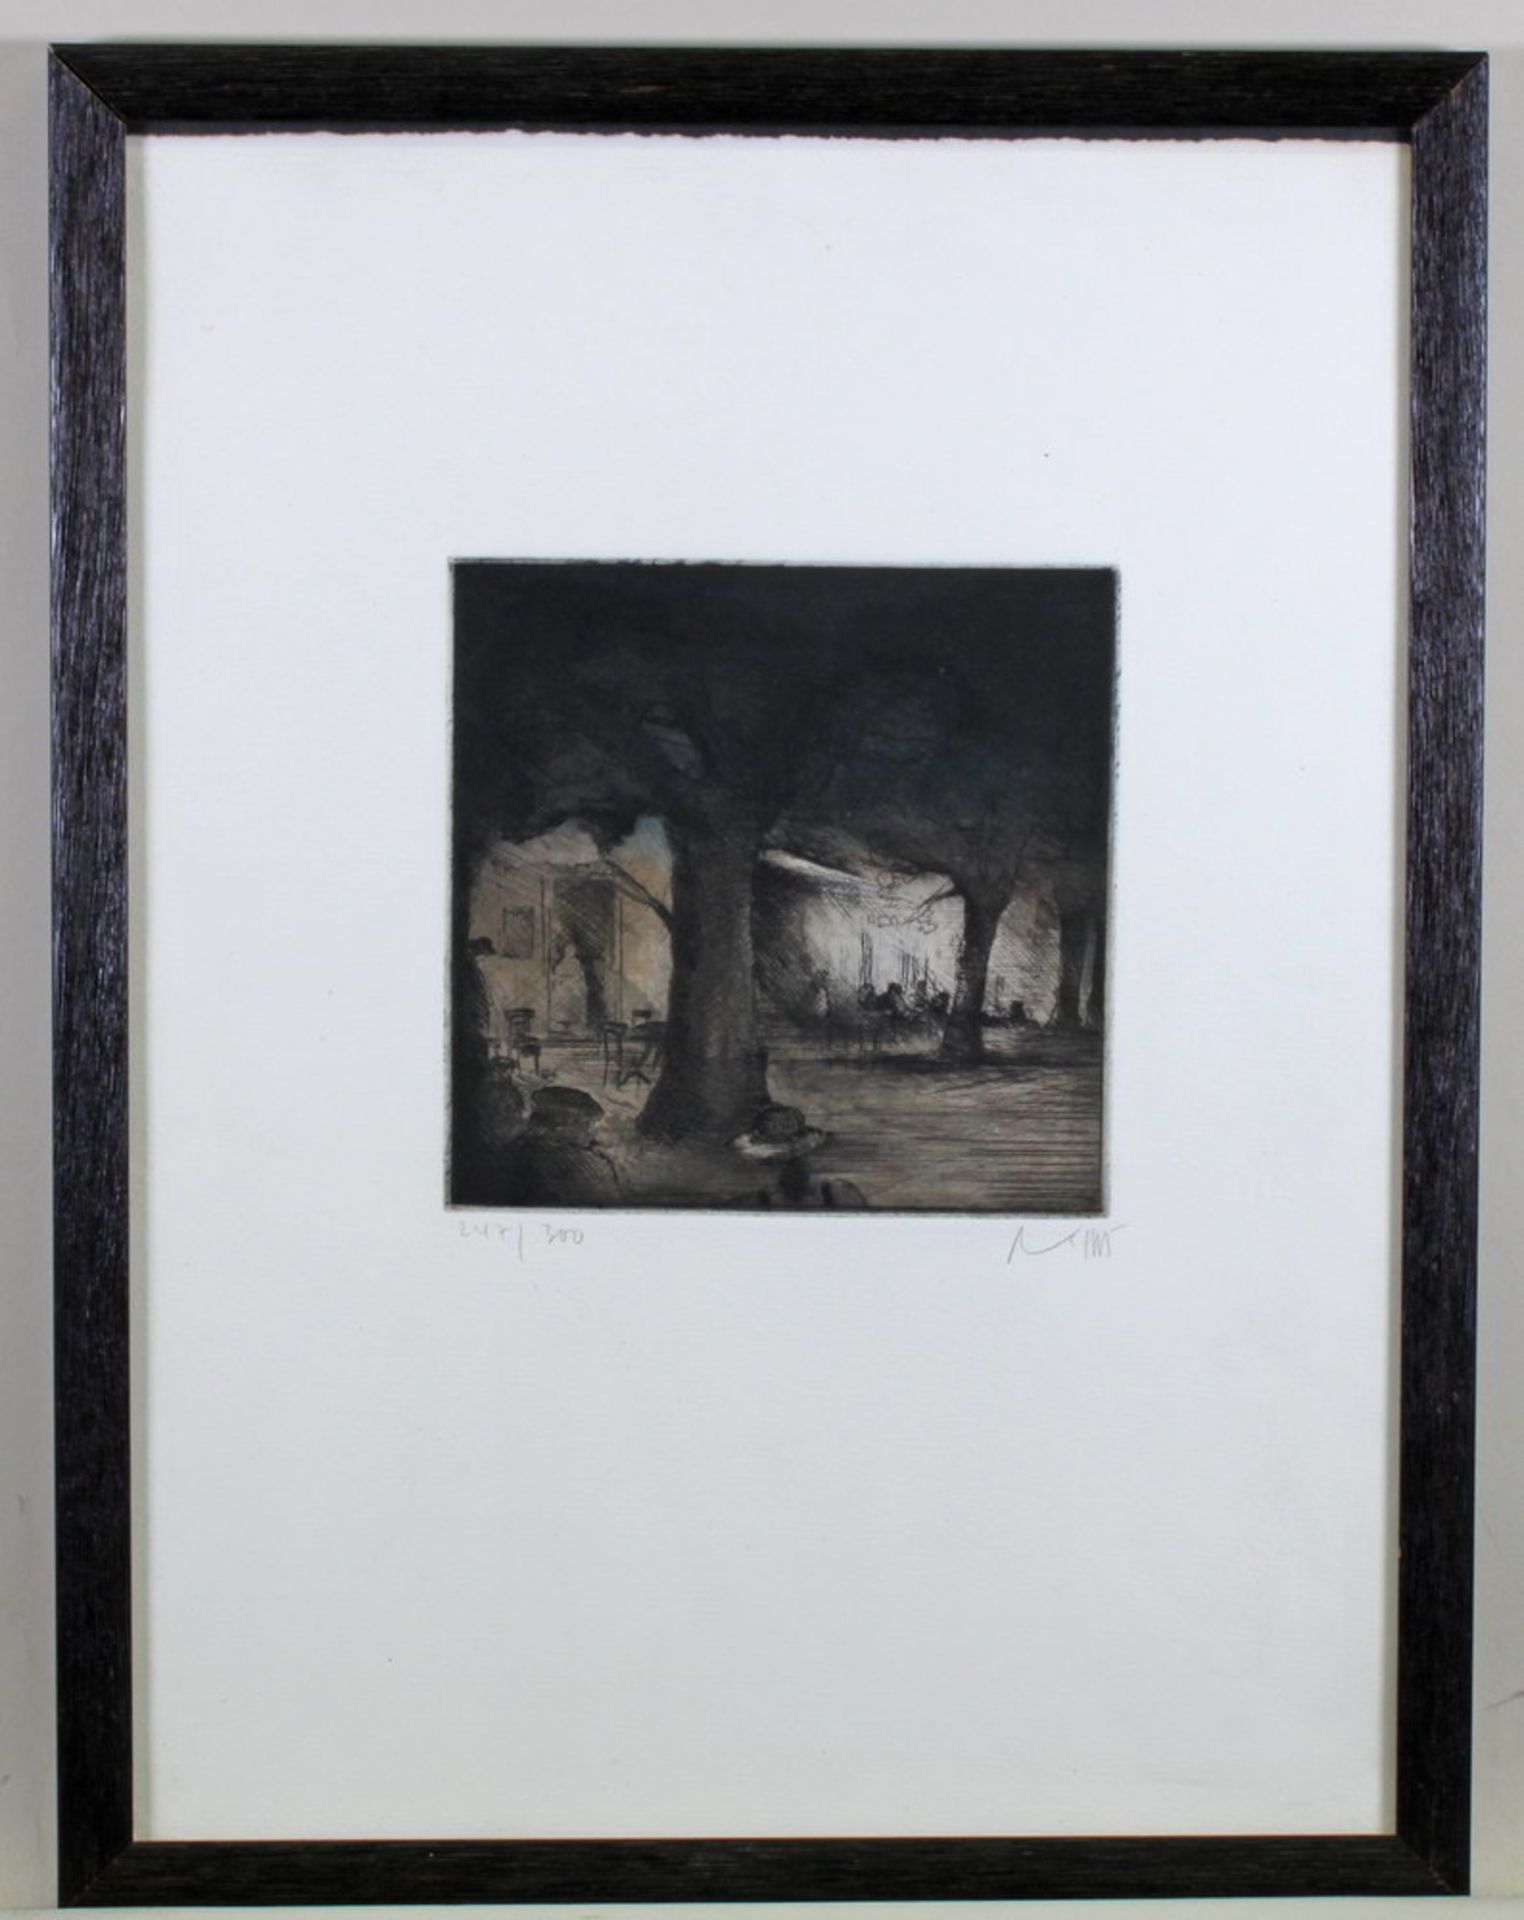 Lichtner-Aix, Werner (1939 - 1987), Radierung, "Place du midi", signiert, nummeriert 247/300, 15 x - Image 2 of 3